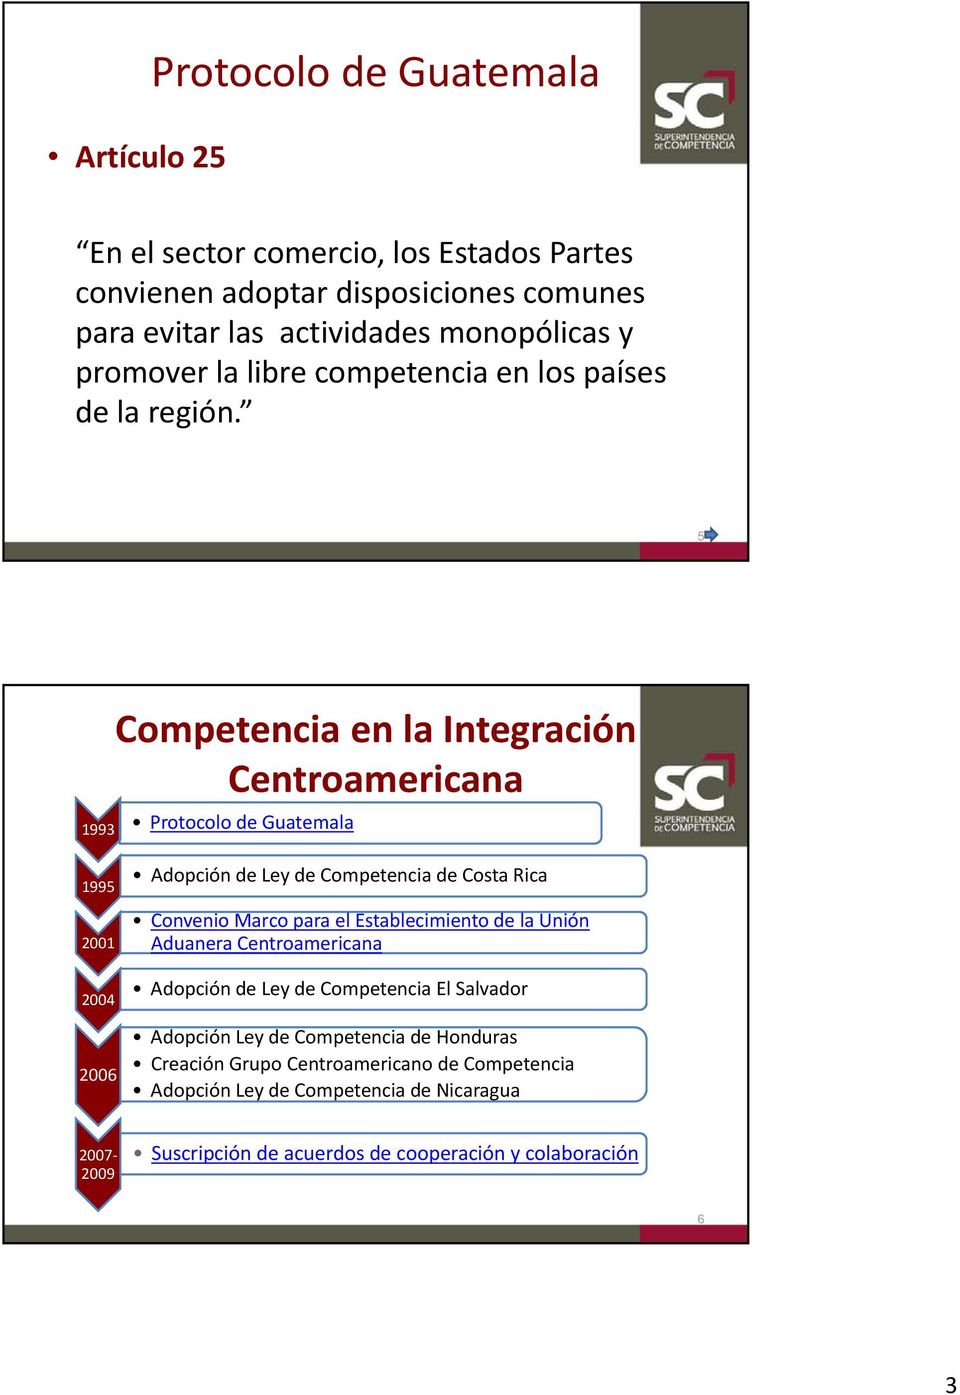 5 Competencia en la Integración 1995 2004 2006 Adopción de Ley de Competencia de Costa Rica Convenio Marco para el Establecimiento de la Unión Aduanera